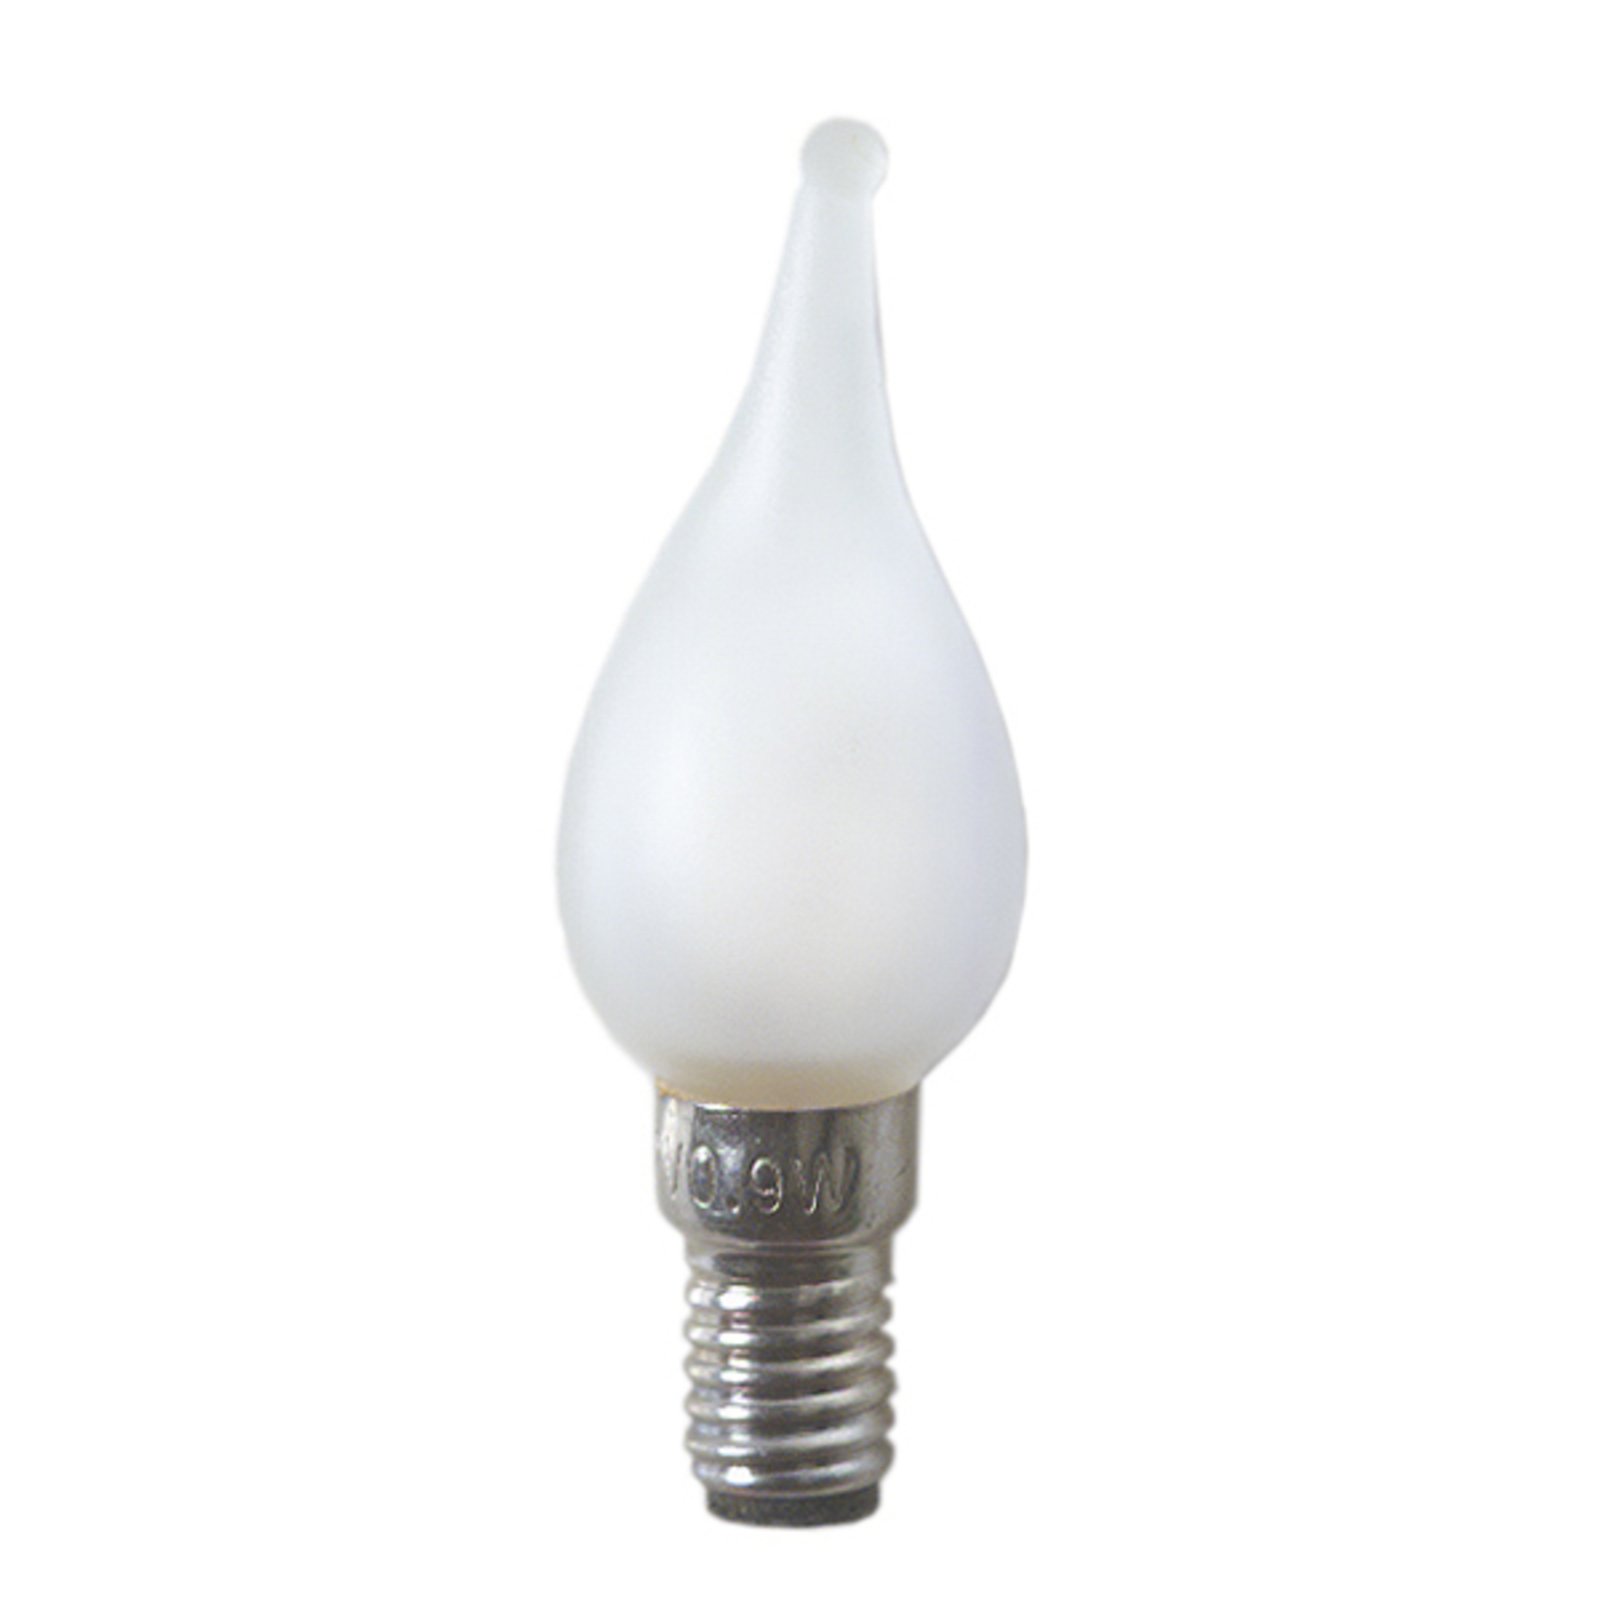 E6 0.9 W 12 V bulbs LV - window candle set of 3